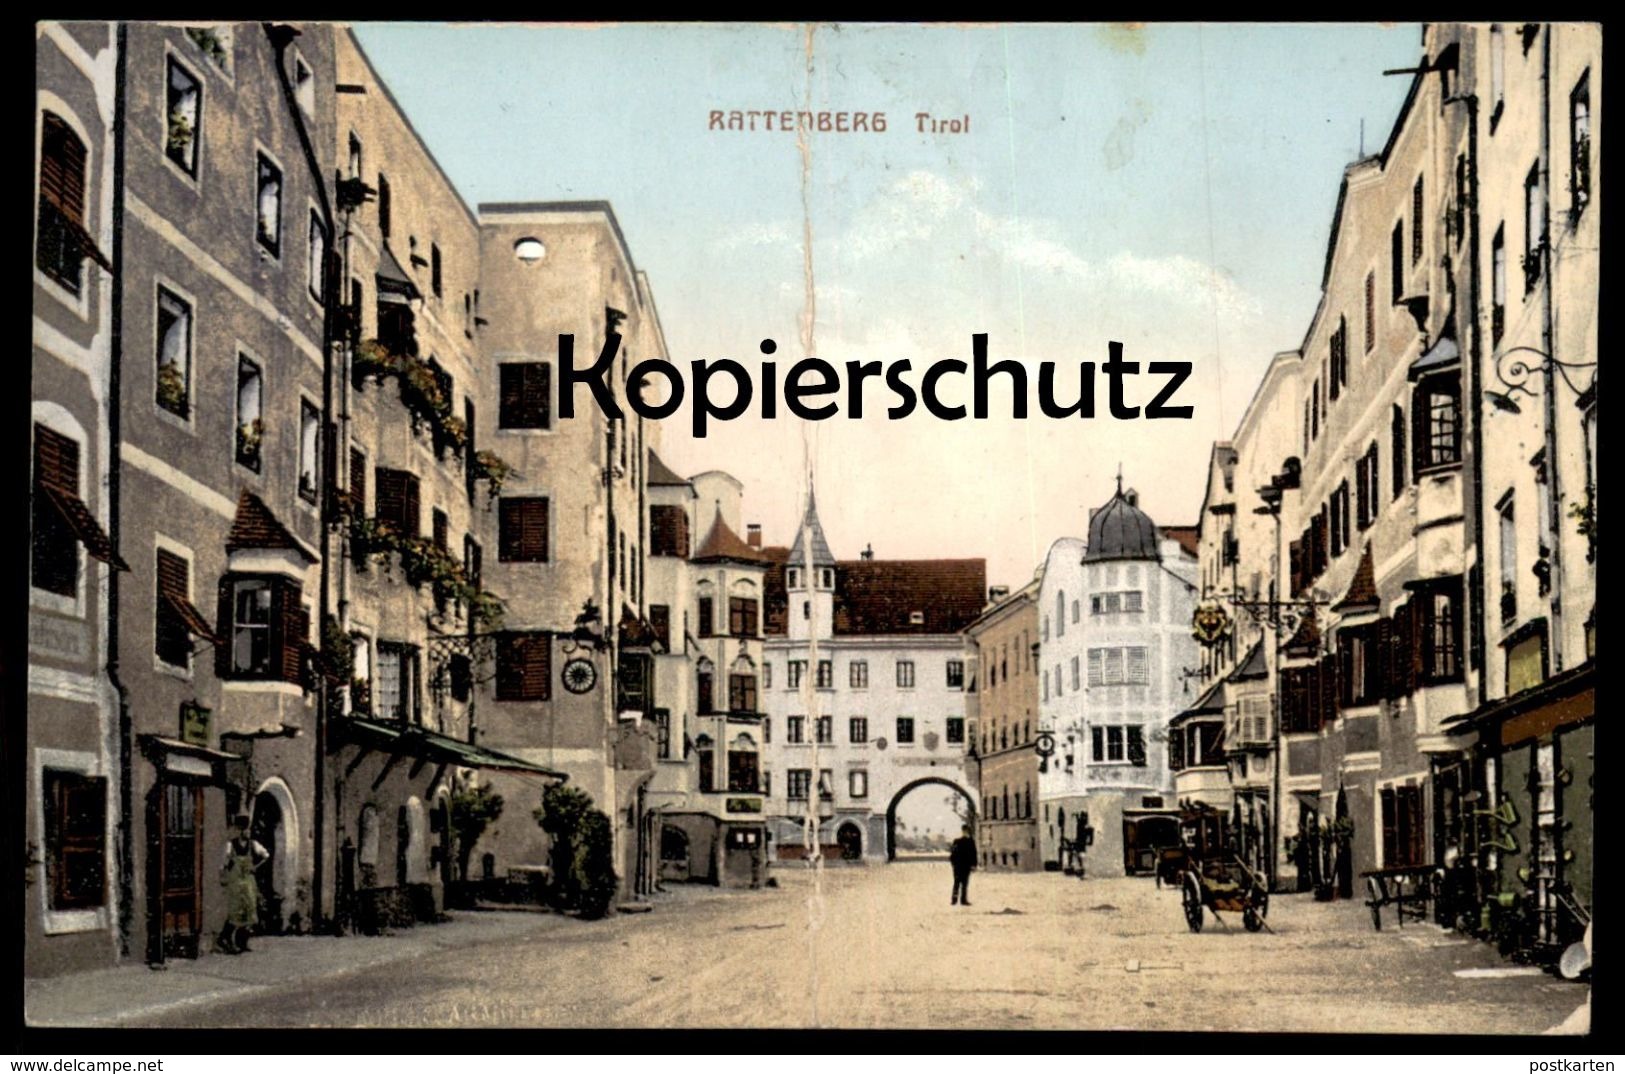 ALTE POSTKARTE RATTENBERG 1914 TIROL Österreich Austria Autriche Ansichtskarte AK Postcard Cpa - Rattenberg